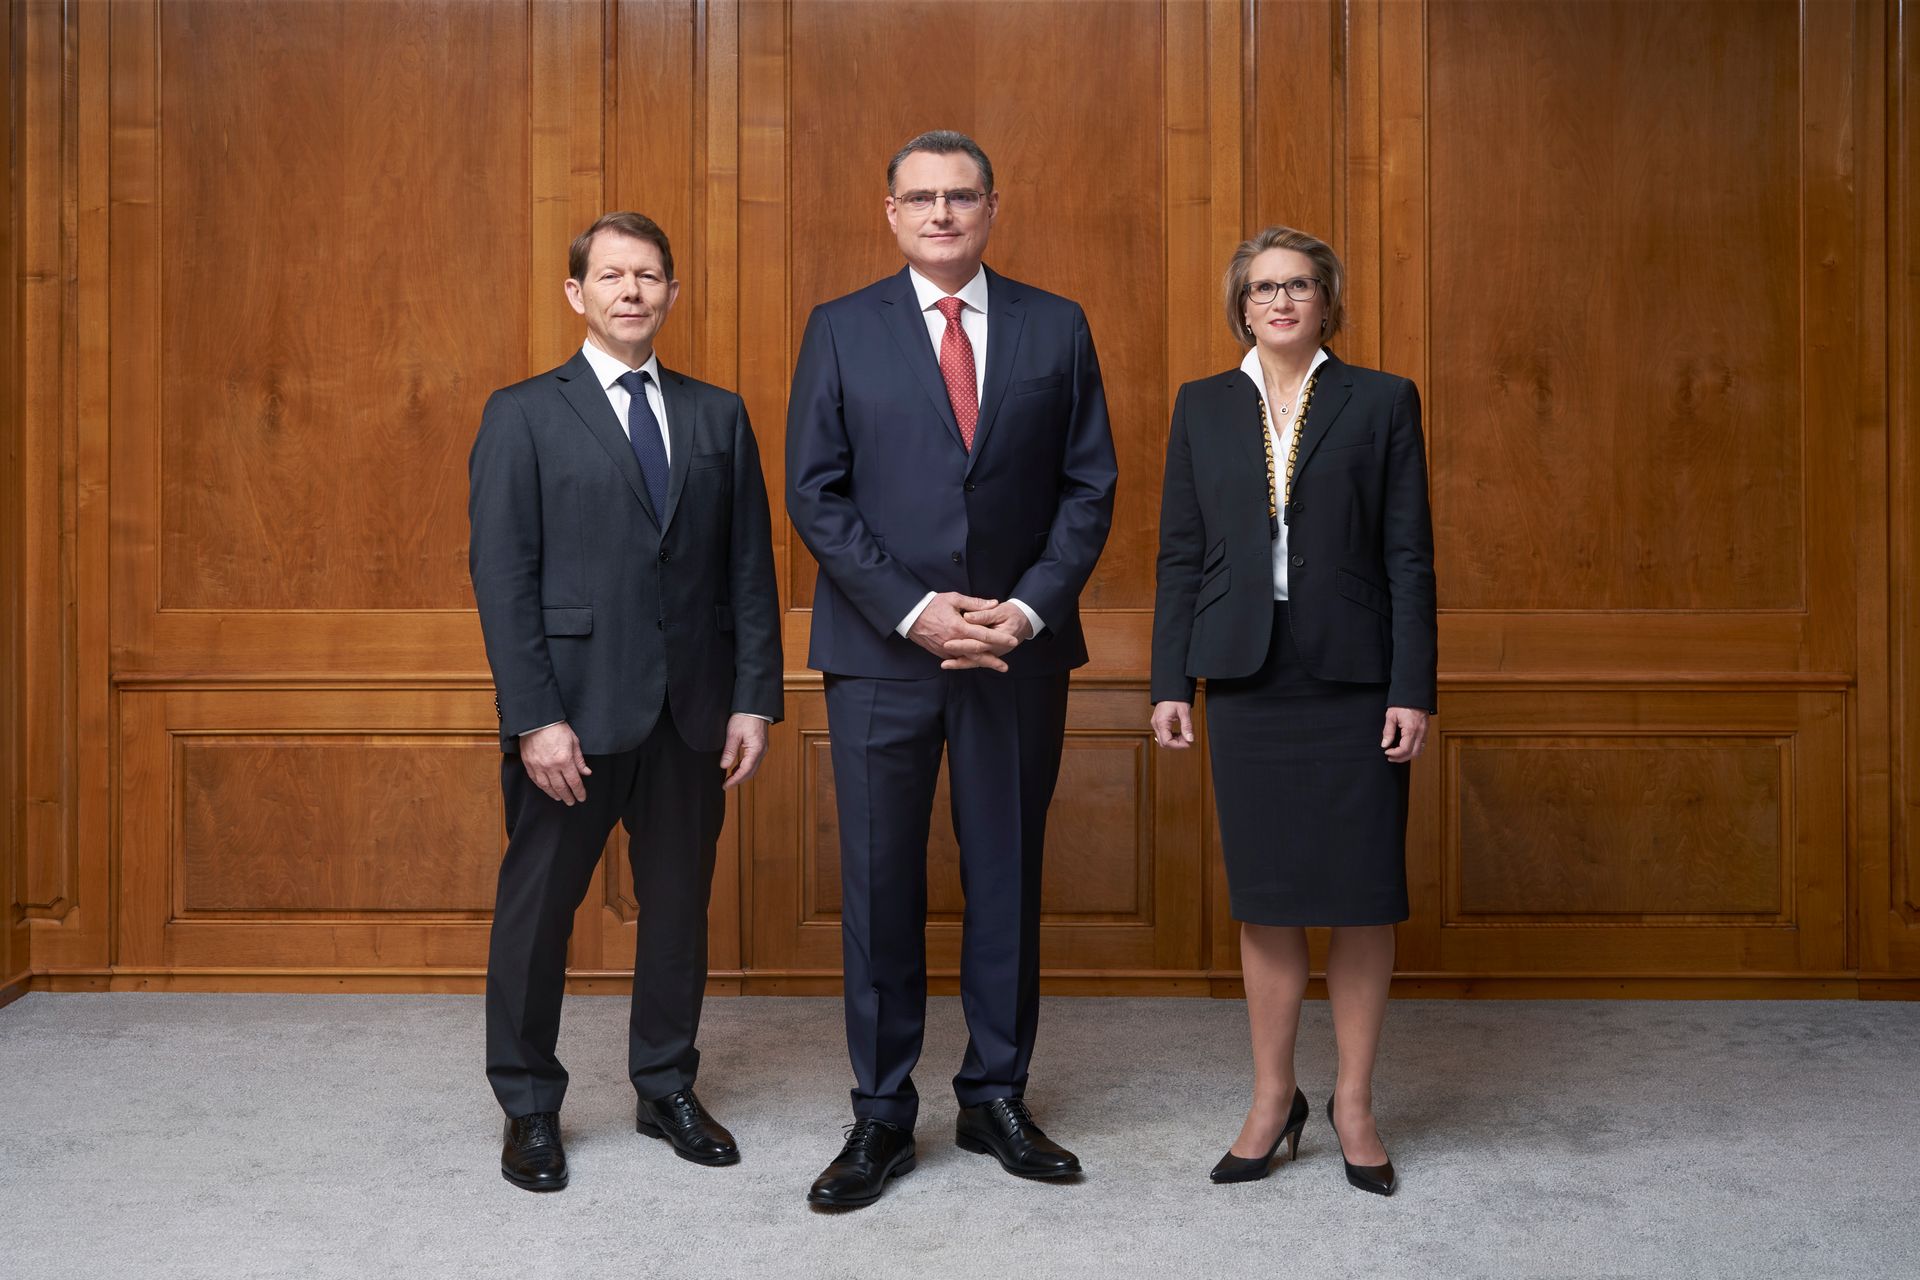 स्विस नेशनल बैंक का कार्यकारी बोर्ड (फ्रिट्ज़ ज़ुरब्रुग, थॉमस जॉर्डन और एंड्रिया मिशेला मेक्लर)